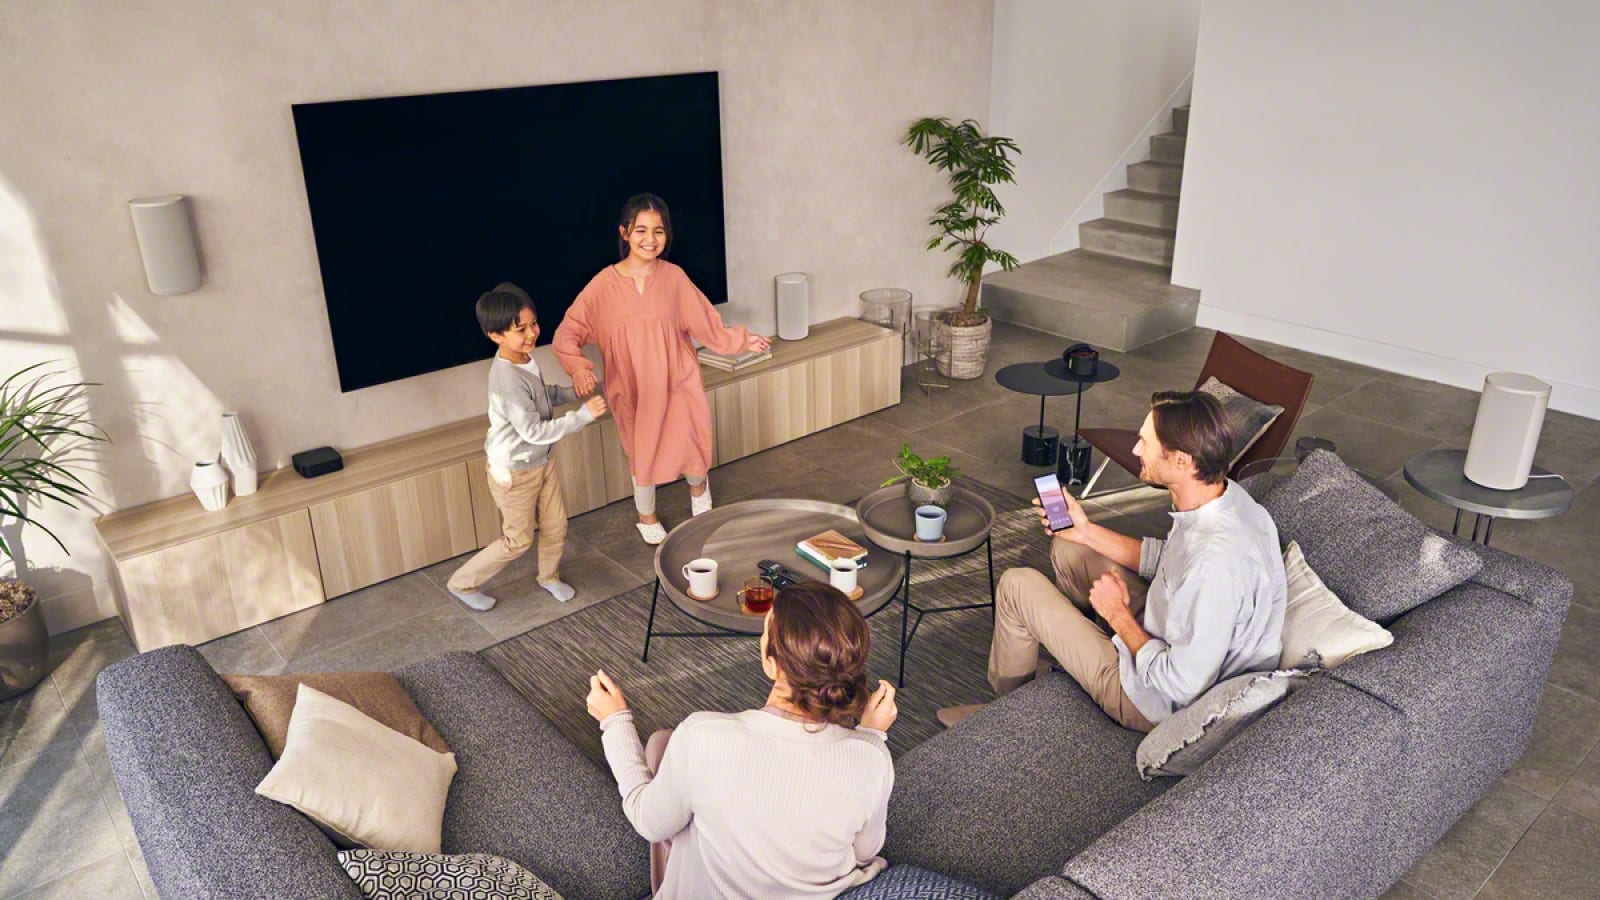 configuración de altavoces inalámbricos sony ht-a9 en una sala de estar con una familia escuchando música